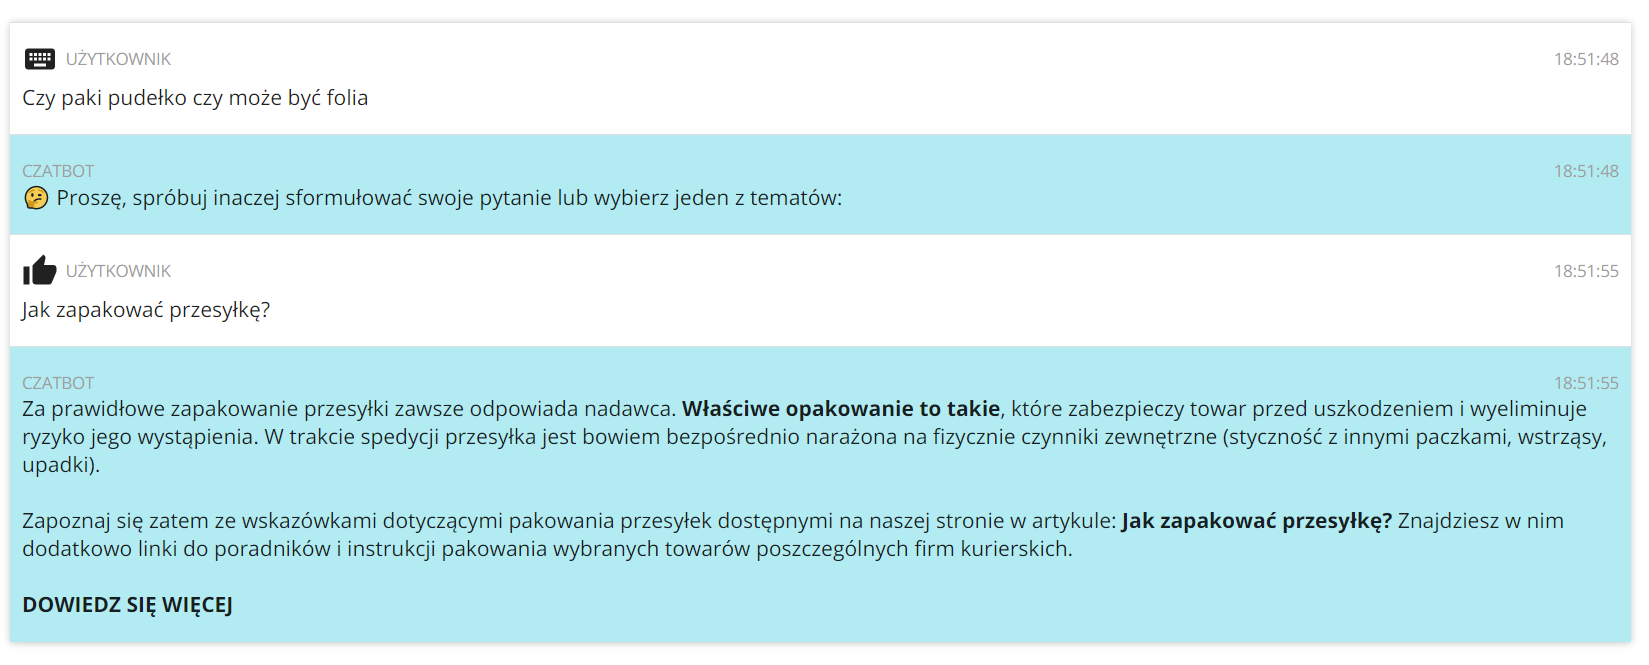 Jak działa czatbot na Furgonetka.pl w przypadku niezrozumienia pytania?